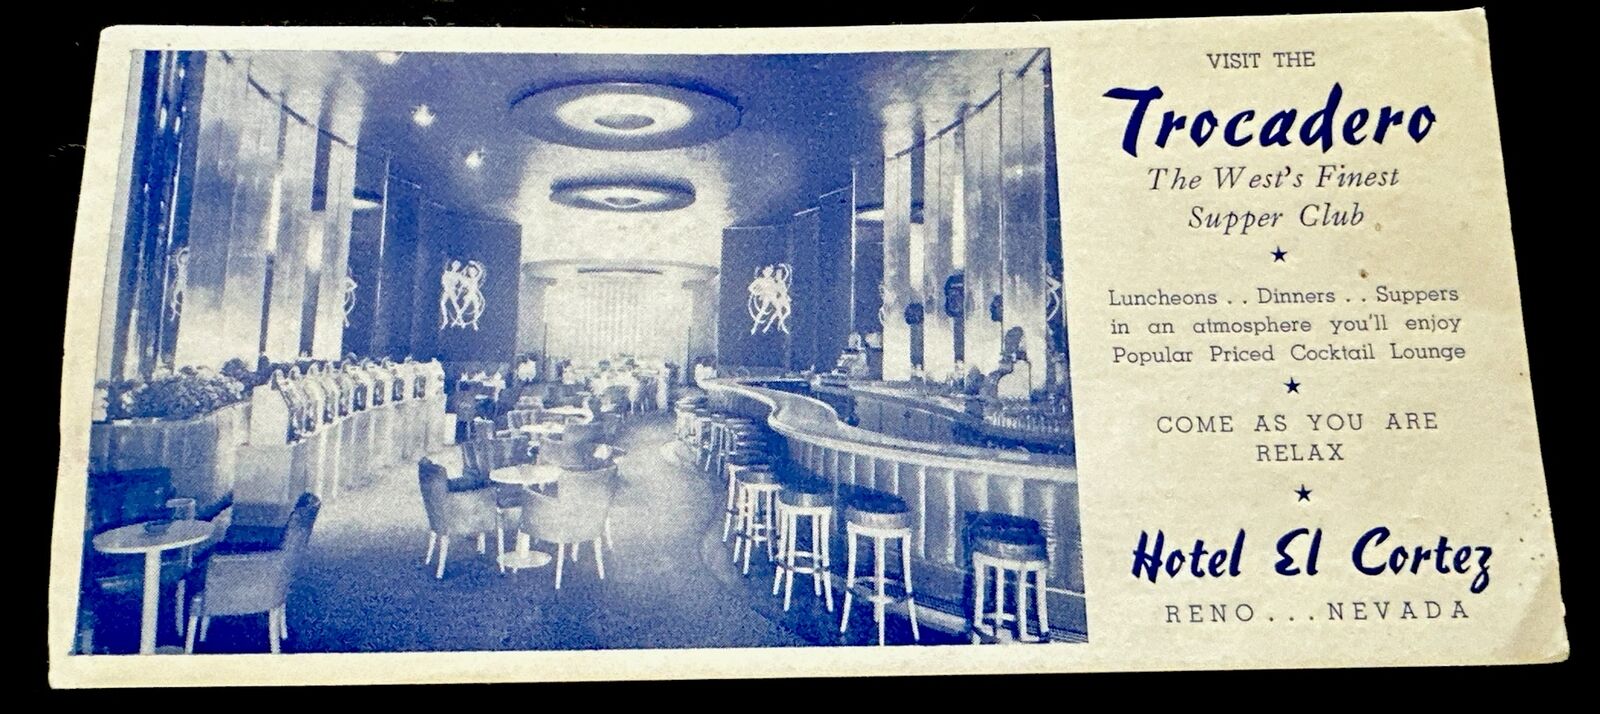 RARE 1941 Postcard Advertising Card TROCADERO SUPPER CLUB RENO NEVADA  EL CORTEZ